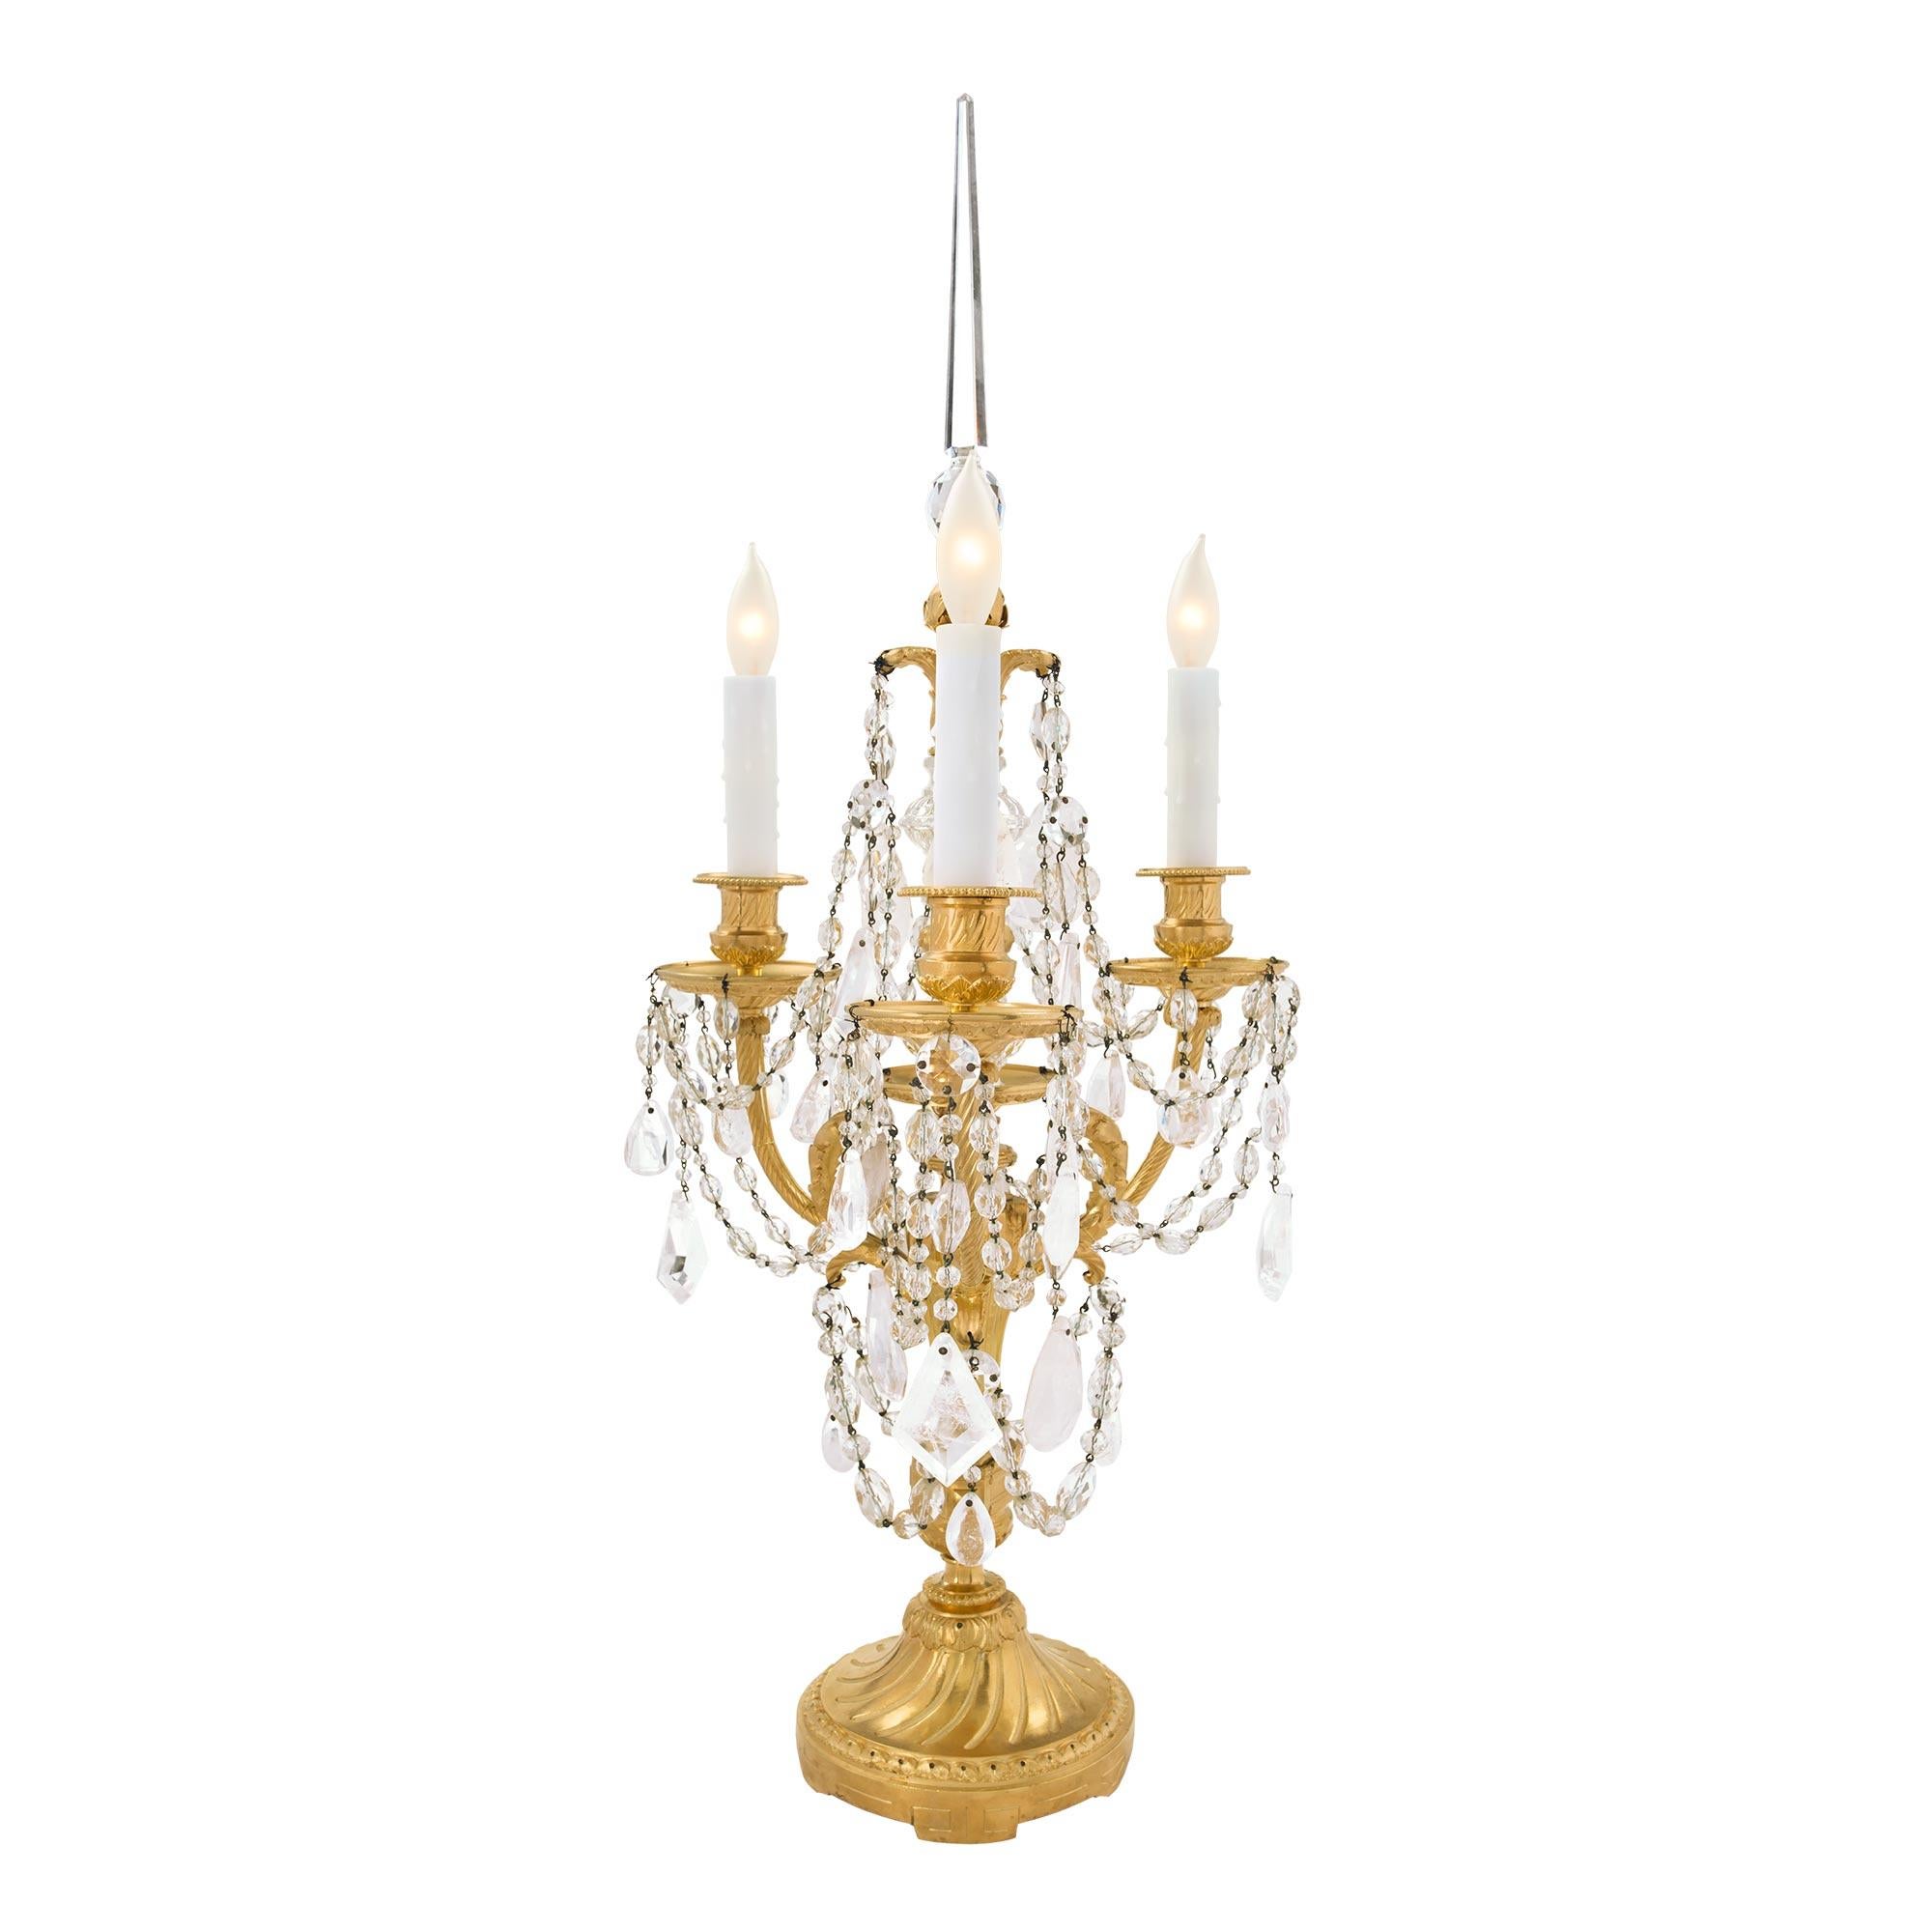 Ein elegantes Paar französischer dreiarmiger Girandoles-Lampen aus dem 19. Jahrhundert aus Louis XVI-St. Ormolu, Baccarat-Kristall und Bergkristall. Jede Leuchte steht auf einem runden Sockel mit einem feinen, umlaufenden Blattwerk und einem